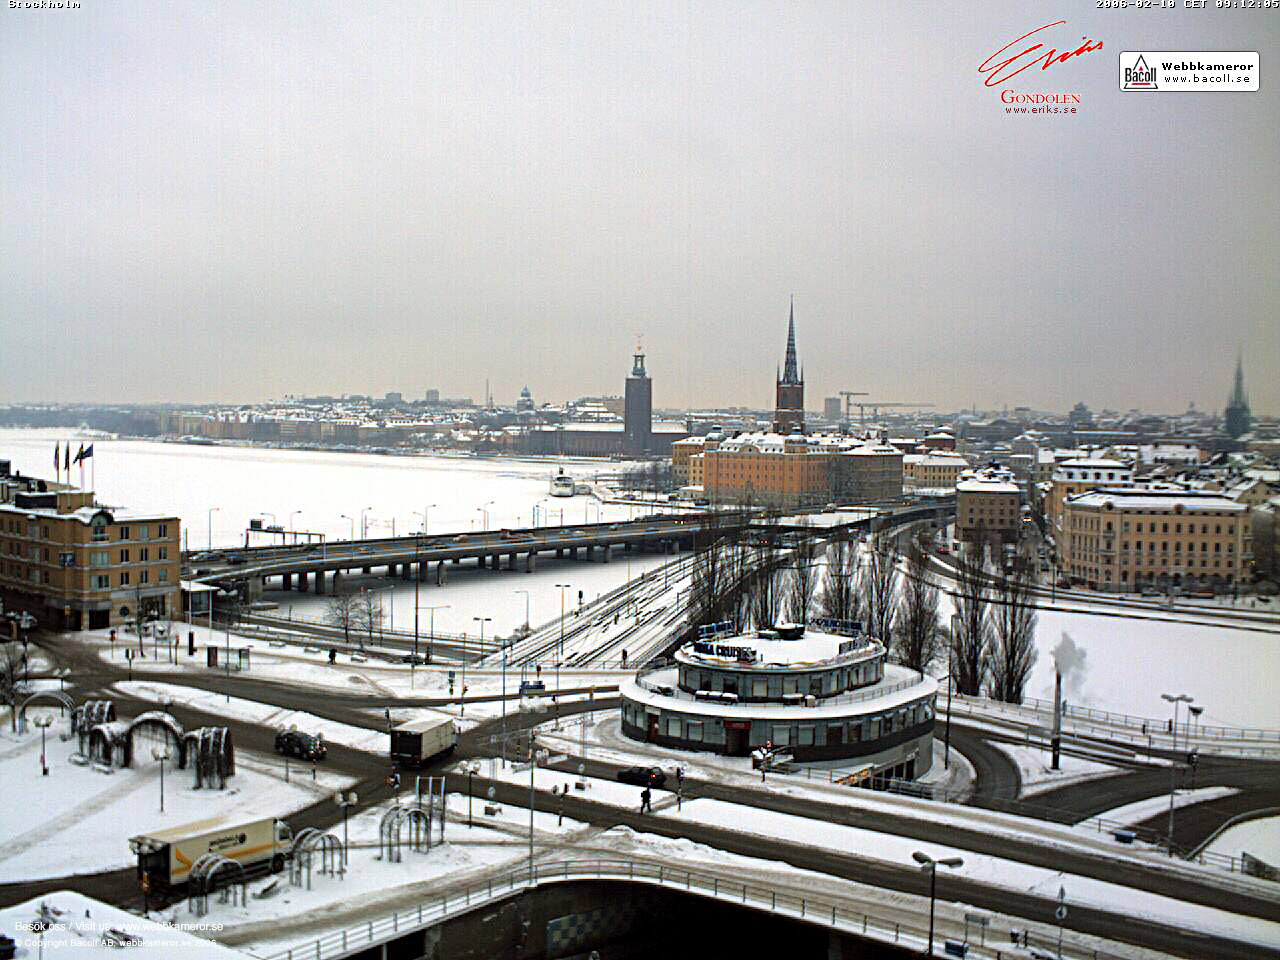 Webbkameror, Stockholm, webcam, väder, weather